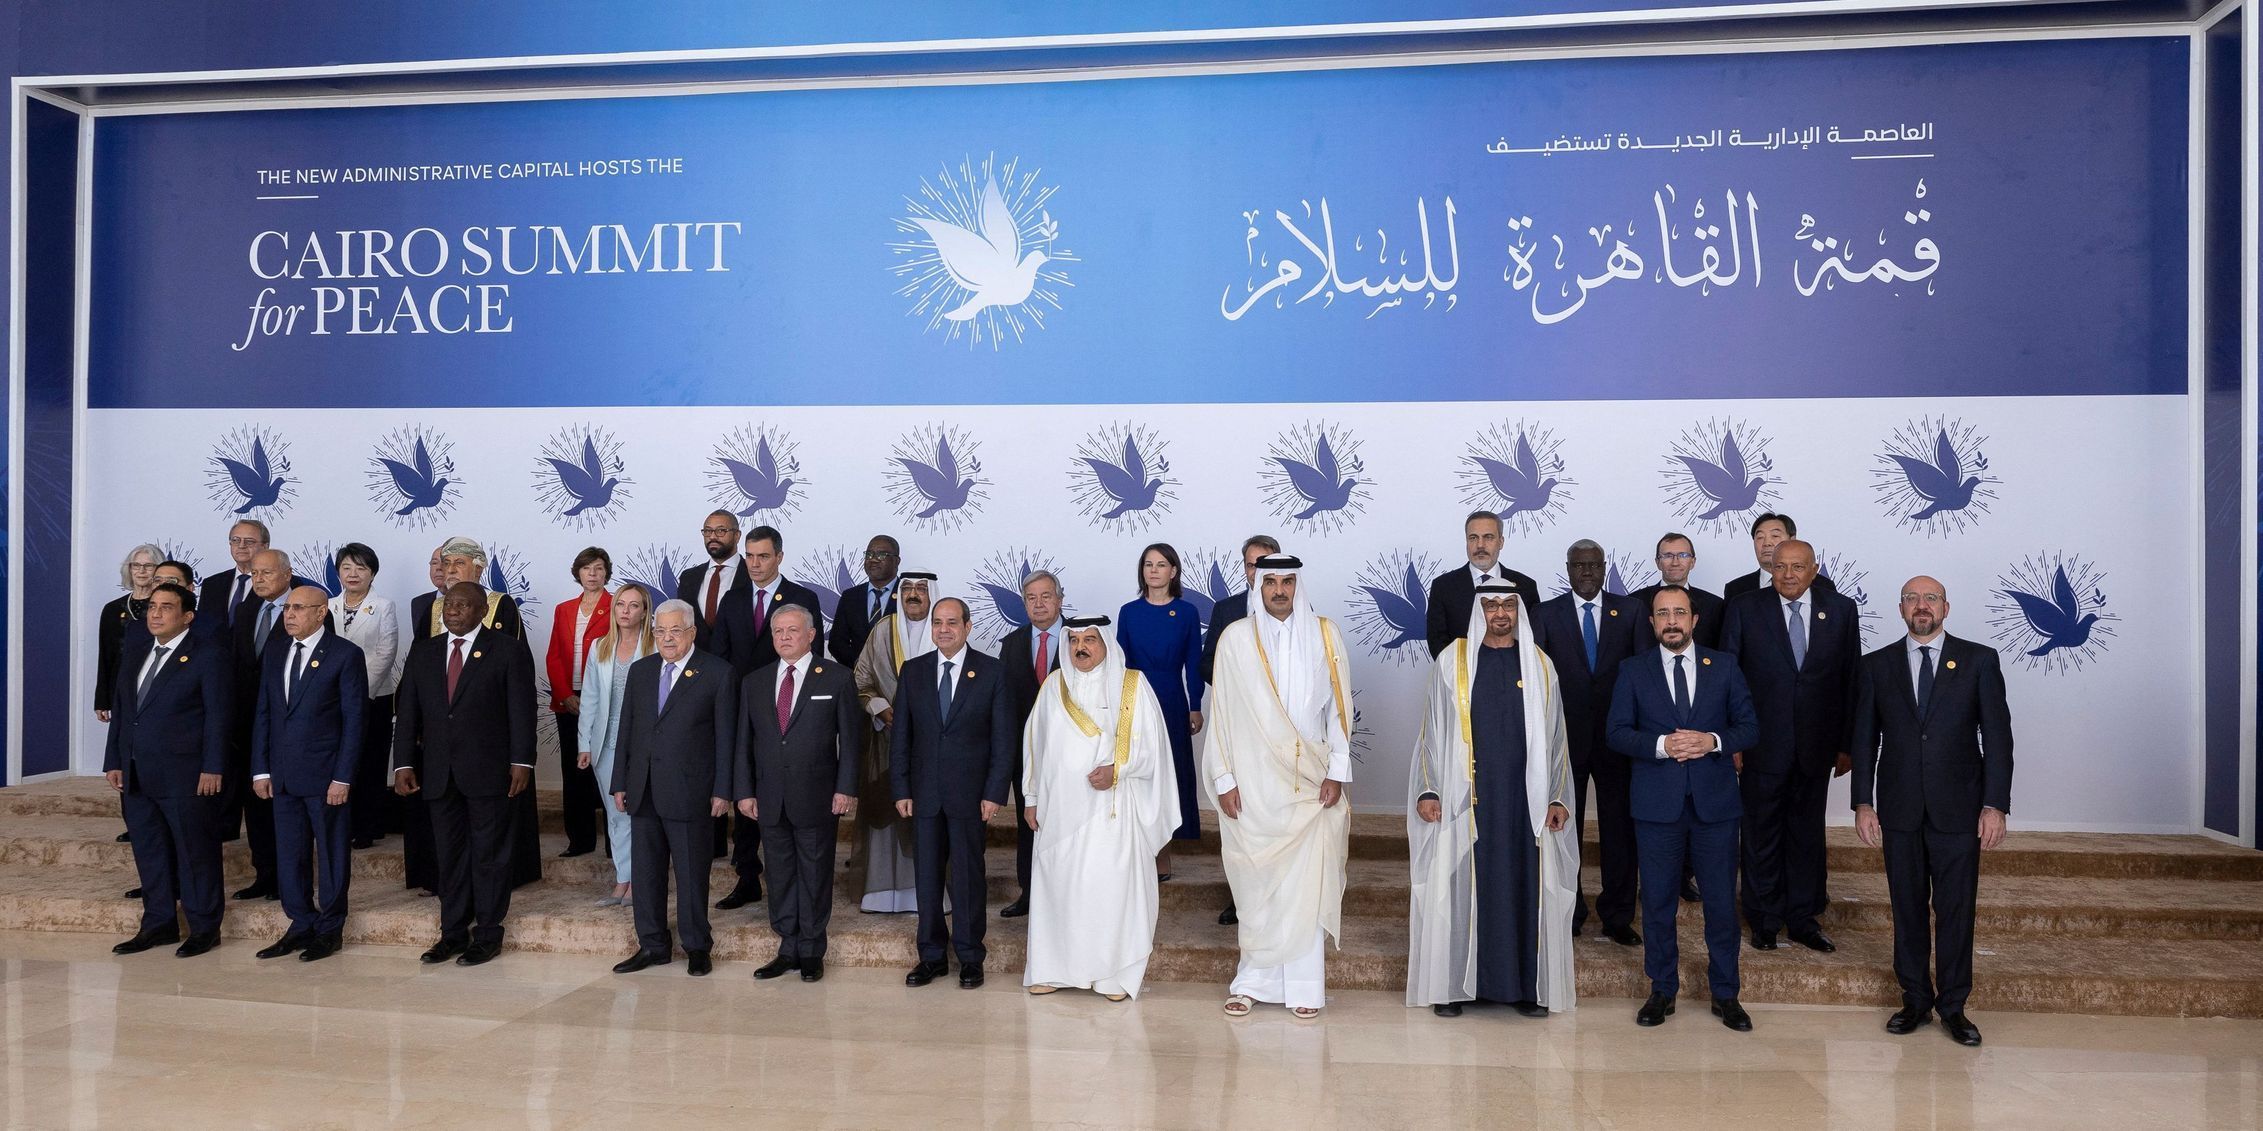 káhira summit izrael palestina